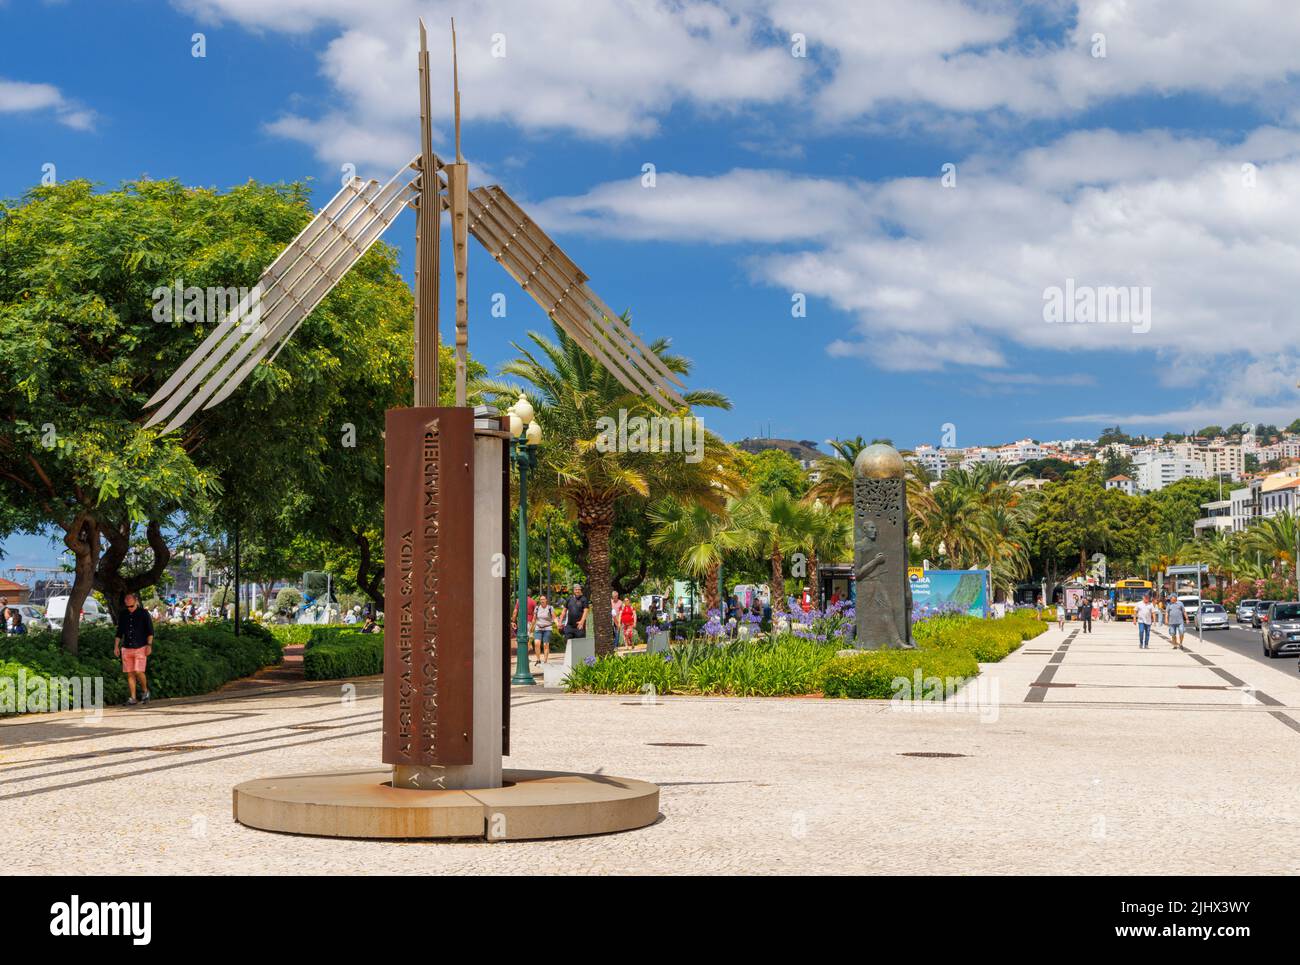 Monumento Alusivo AO 580 Aniversario DA Forca Aereat on Avenida do Mar, Funchal, Madeira, Portugal Stock Photo